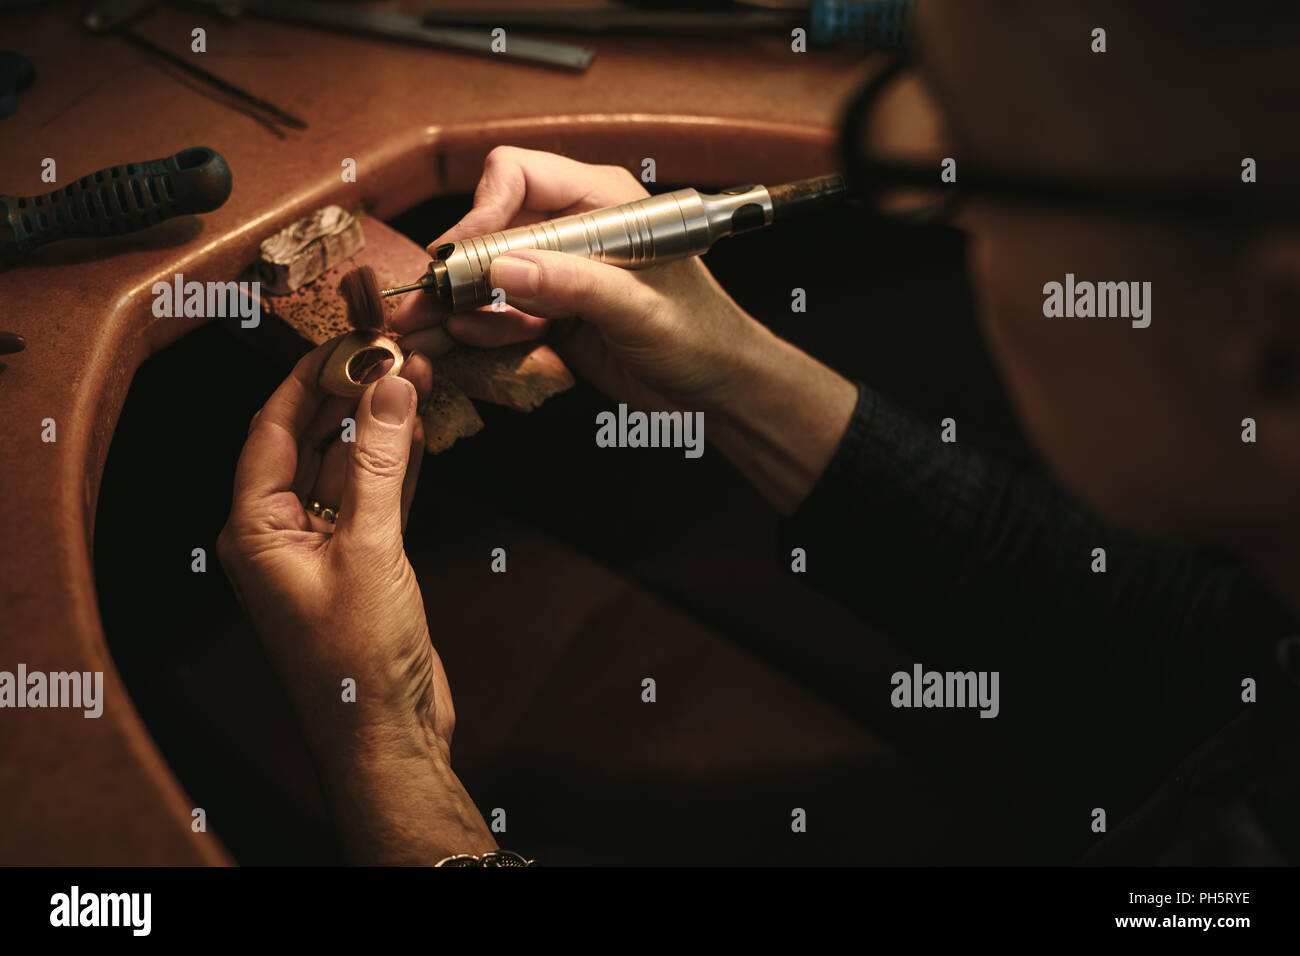 Polissage bijoutier bijoux avec des outils Photo Stock - Alamy